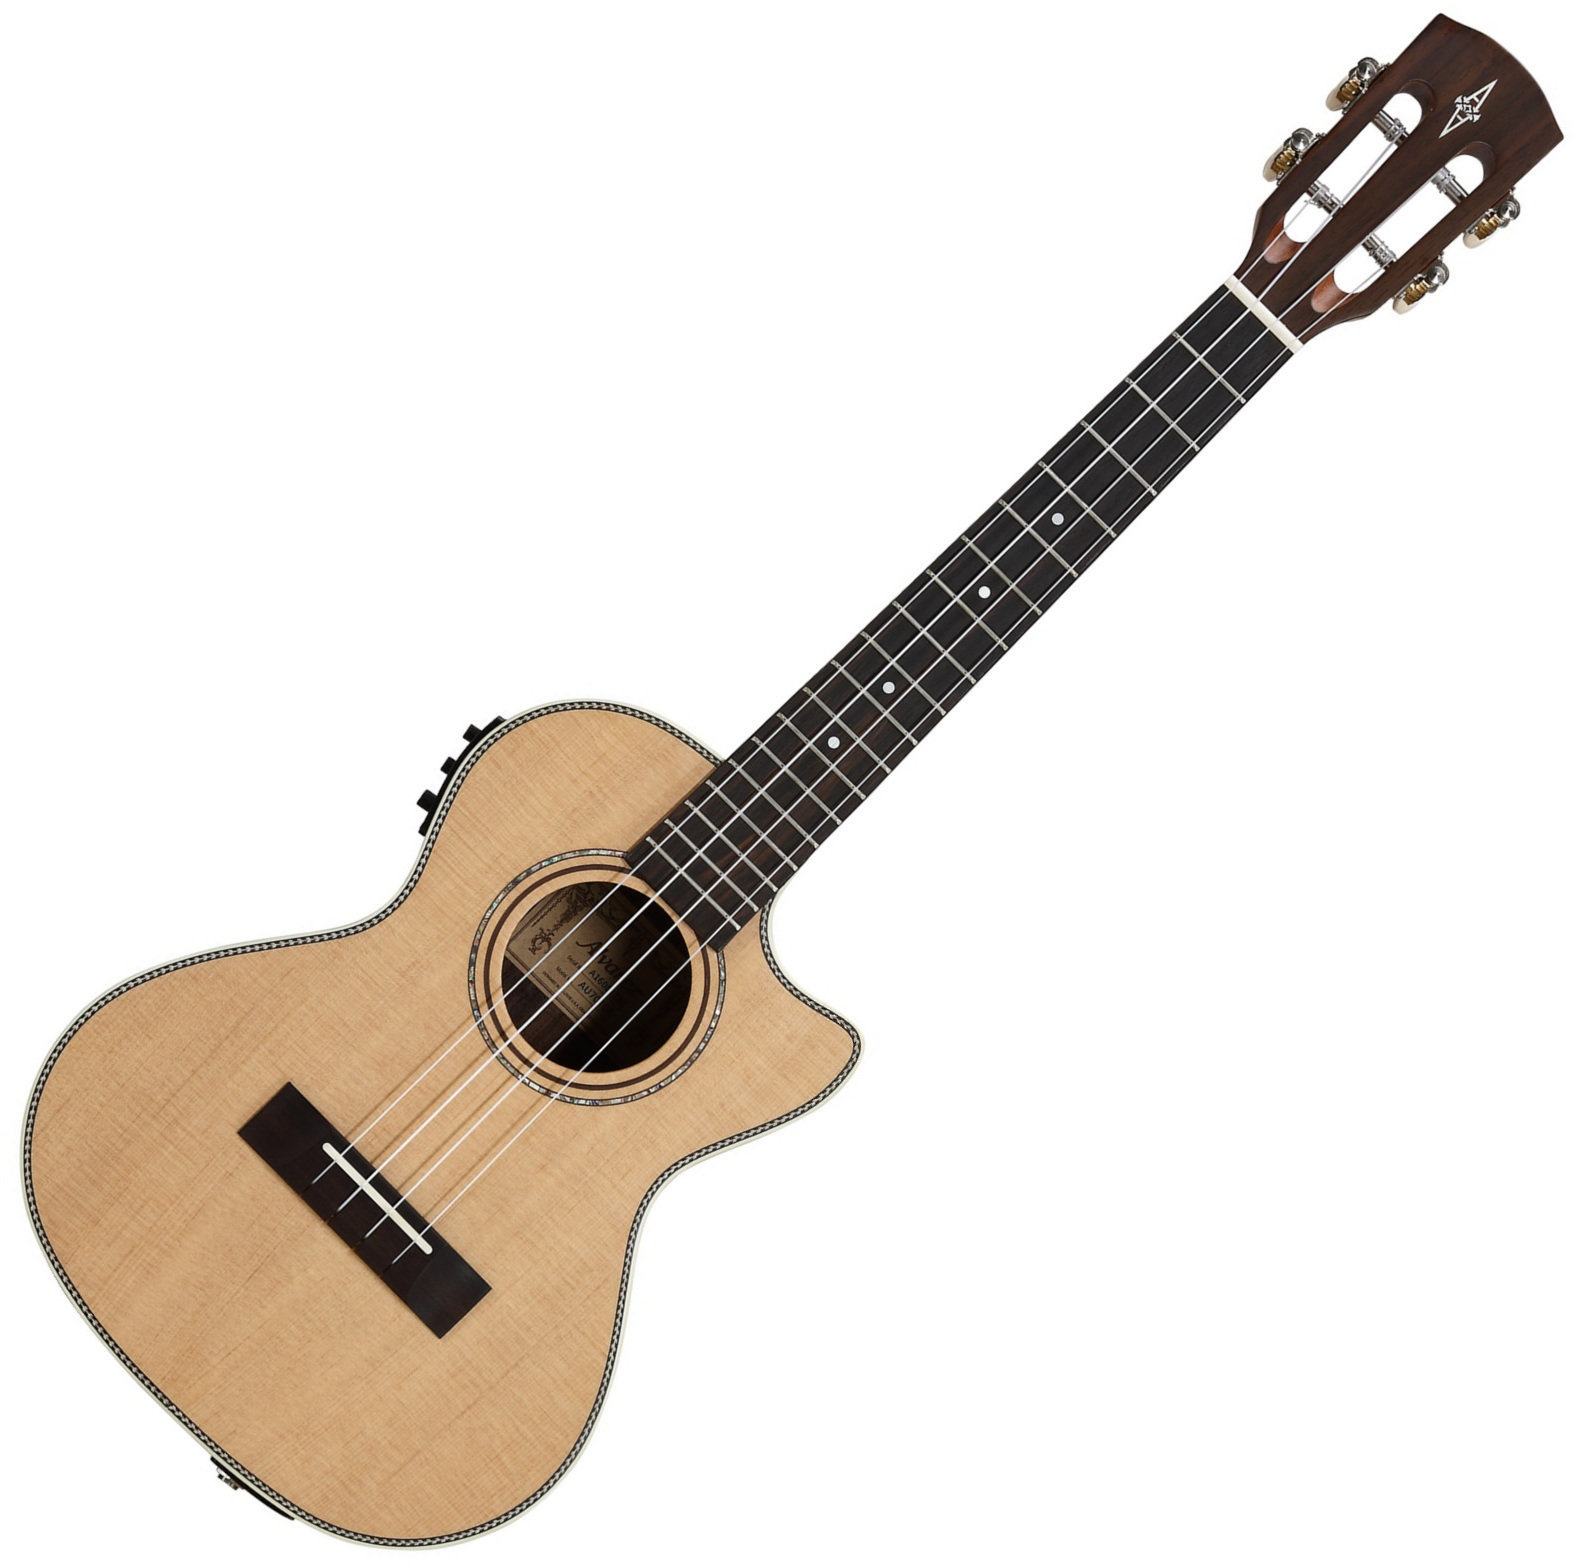 Tenor ukulele Alvarez AU70TCE Tenor ukulele Natural